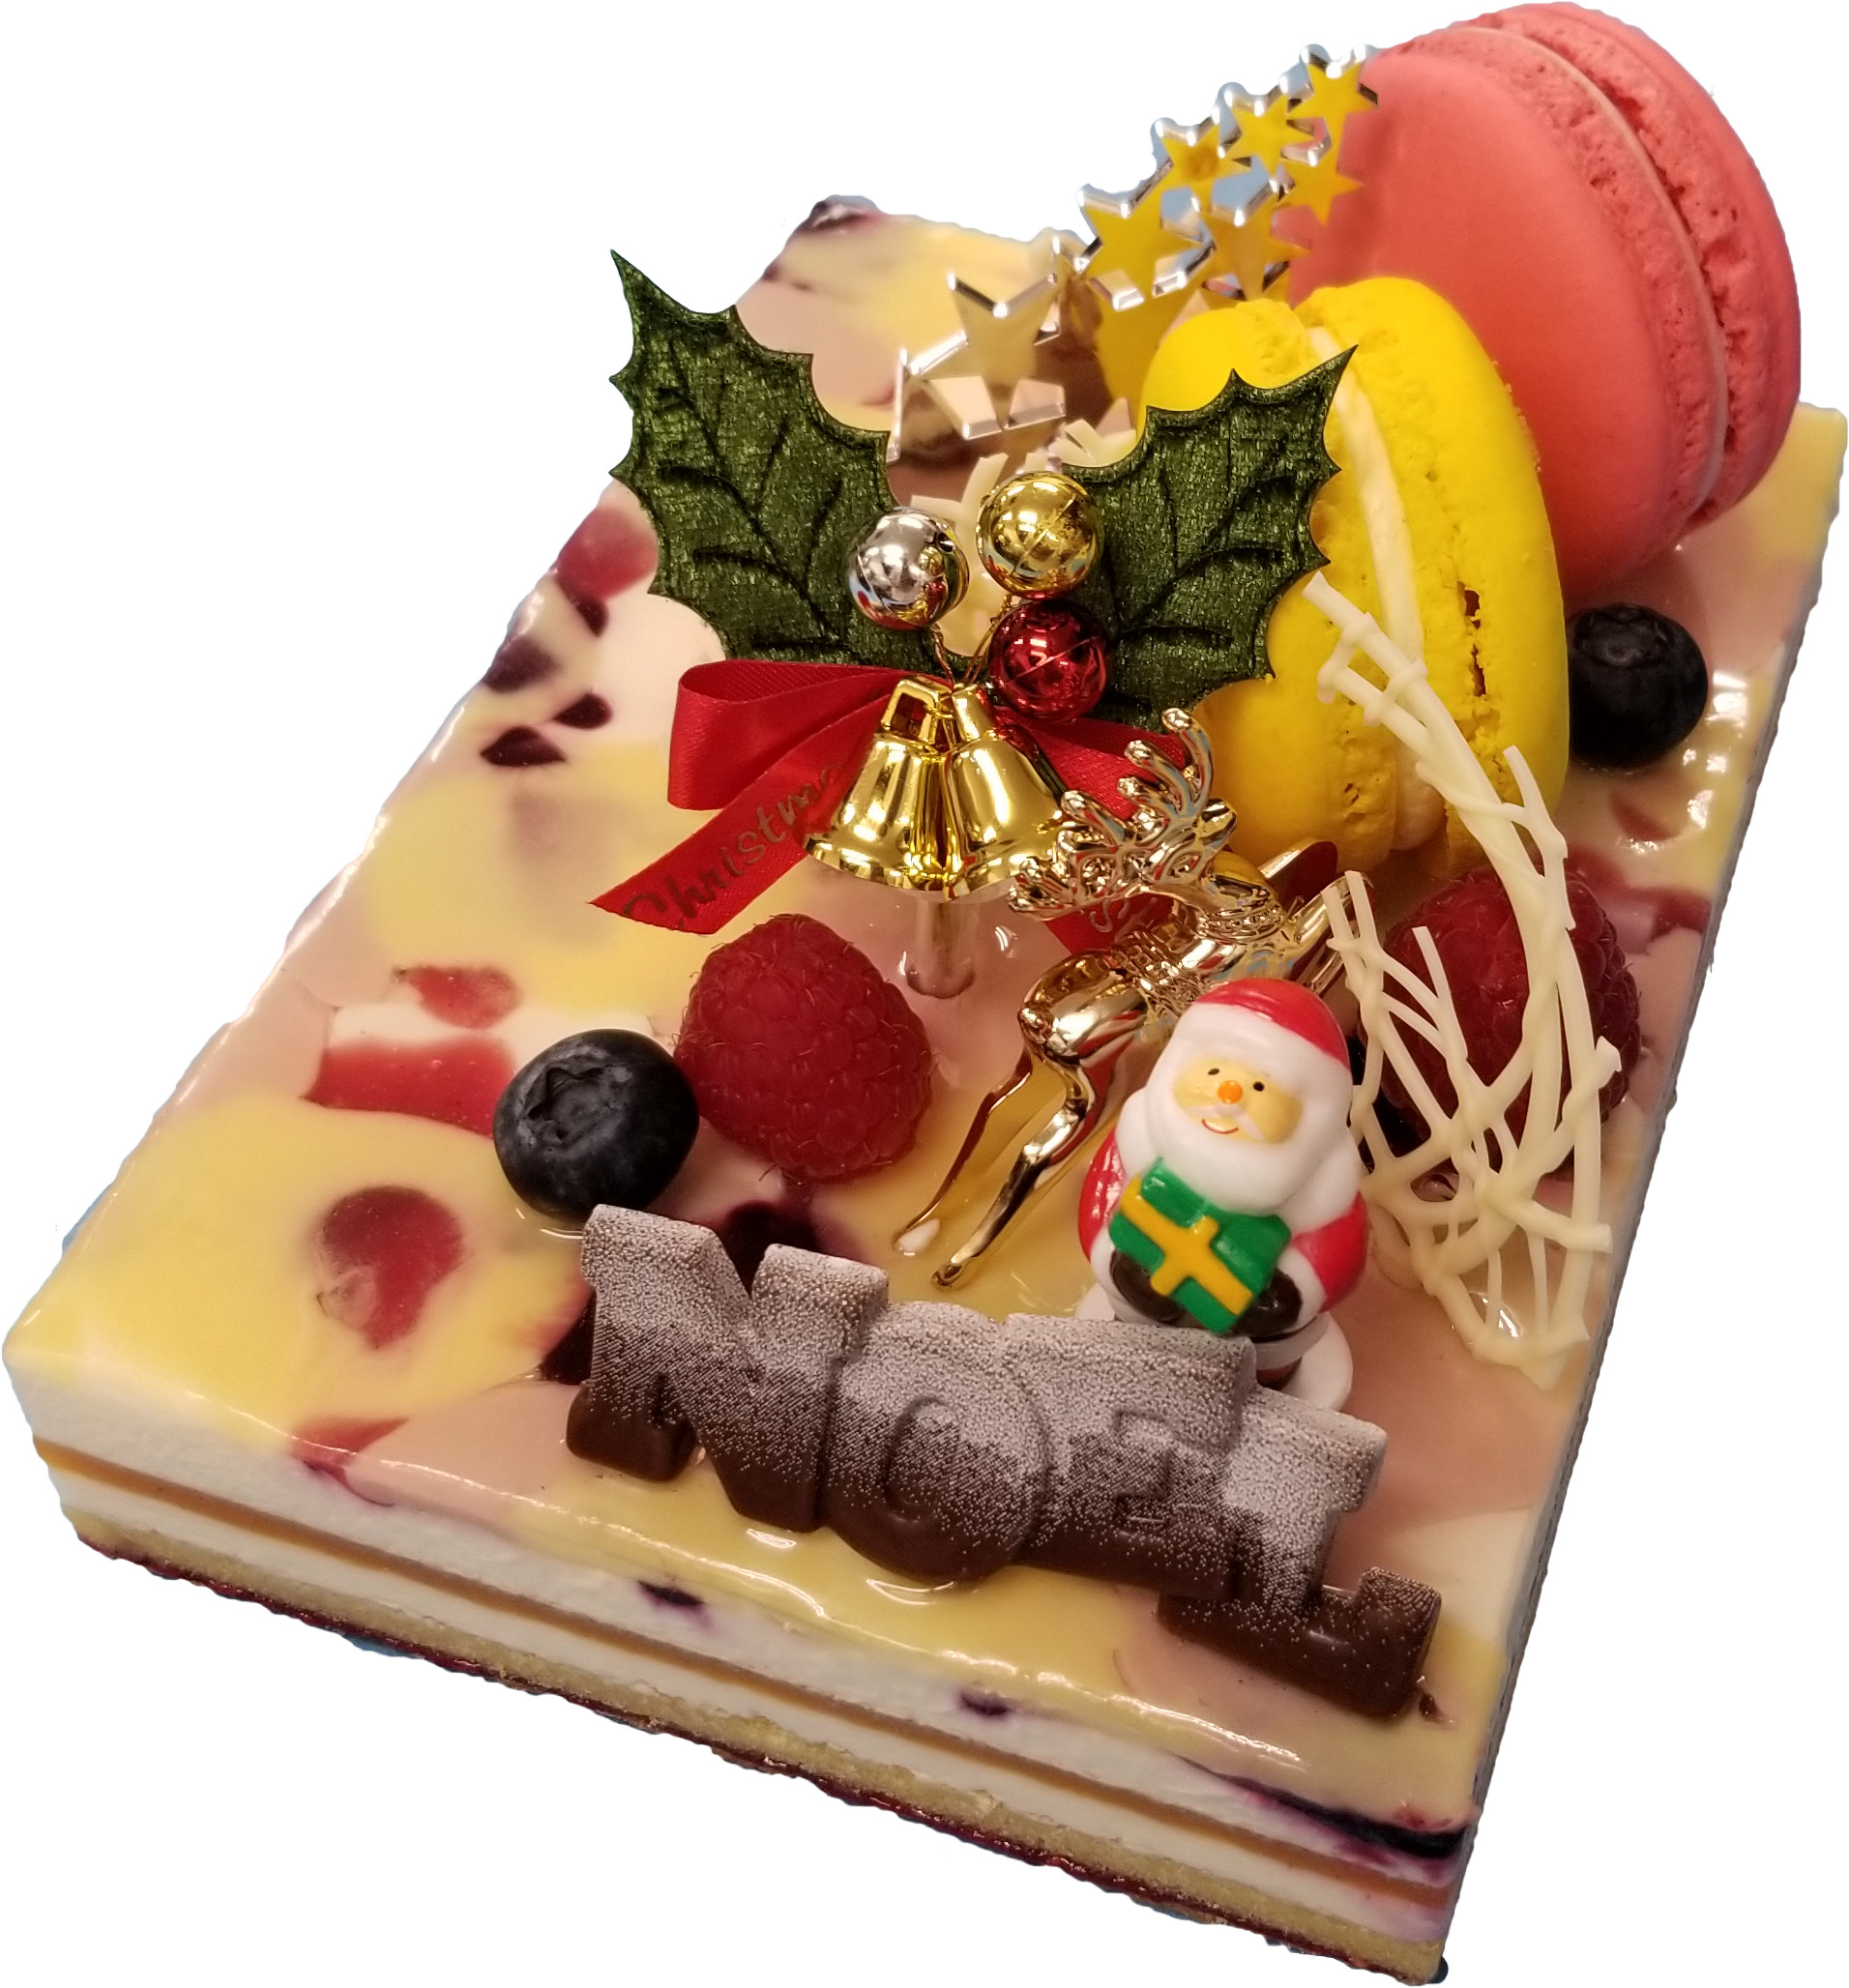 シェフがイチオシするクリスマスケーキ アプリコットフロマージュ いなべ ケーキ おすすめ 県知事賞受賞 いなべのケーキ カフェ Patisserie Ghibli パティスリーギブリ